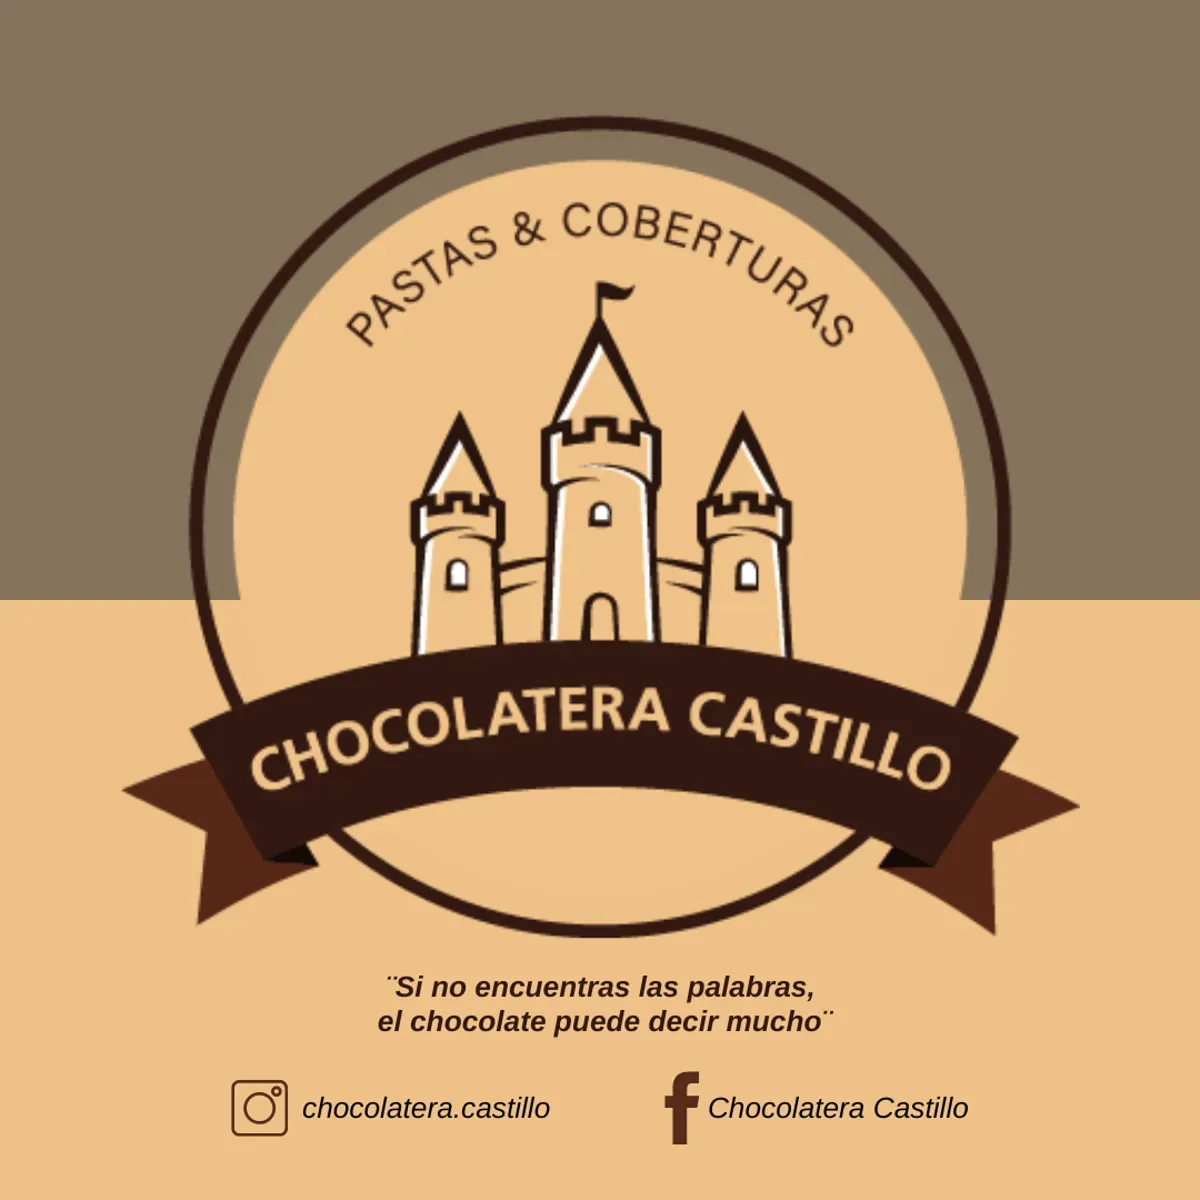 Chocolatera Castillo